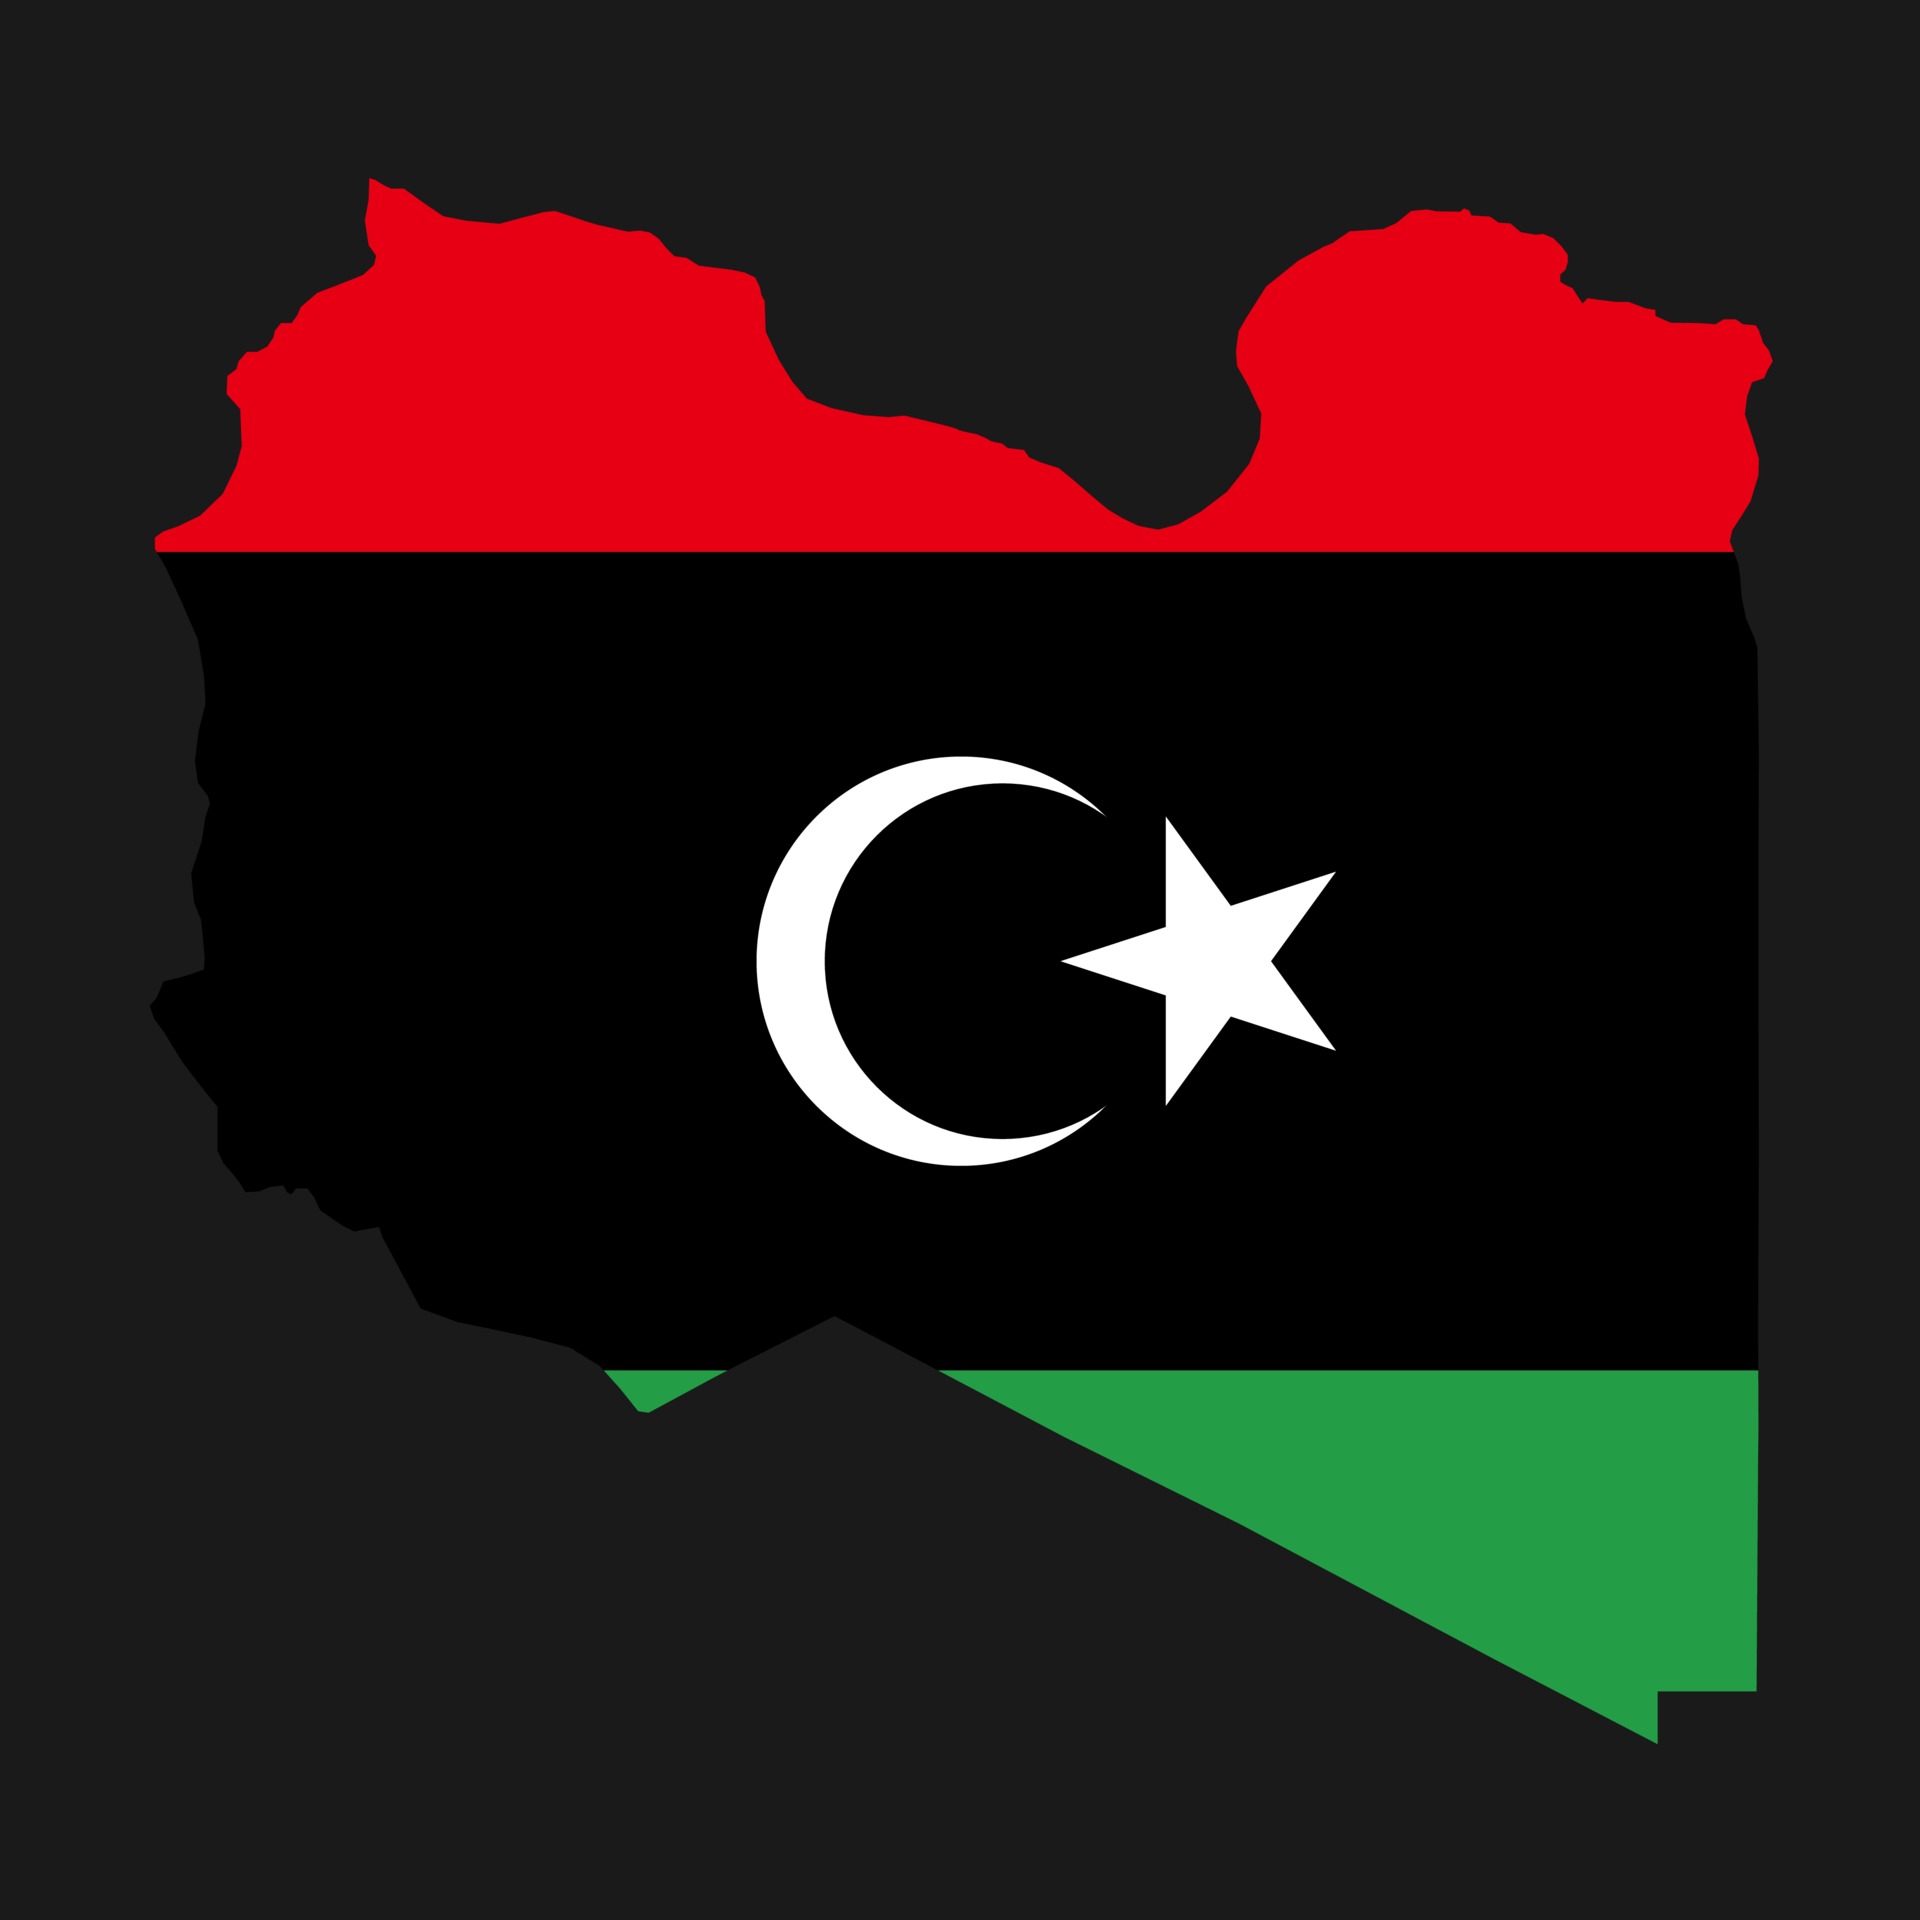 利比亚地图剪影与国旗插图0